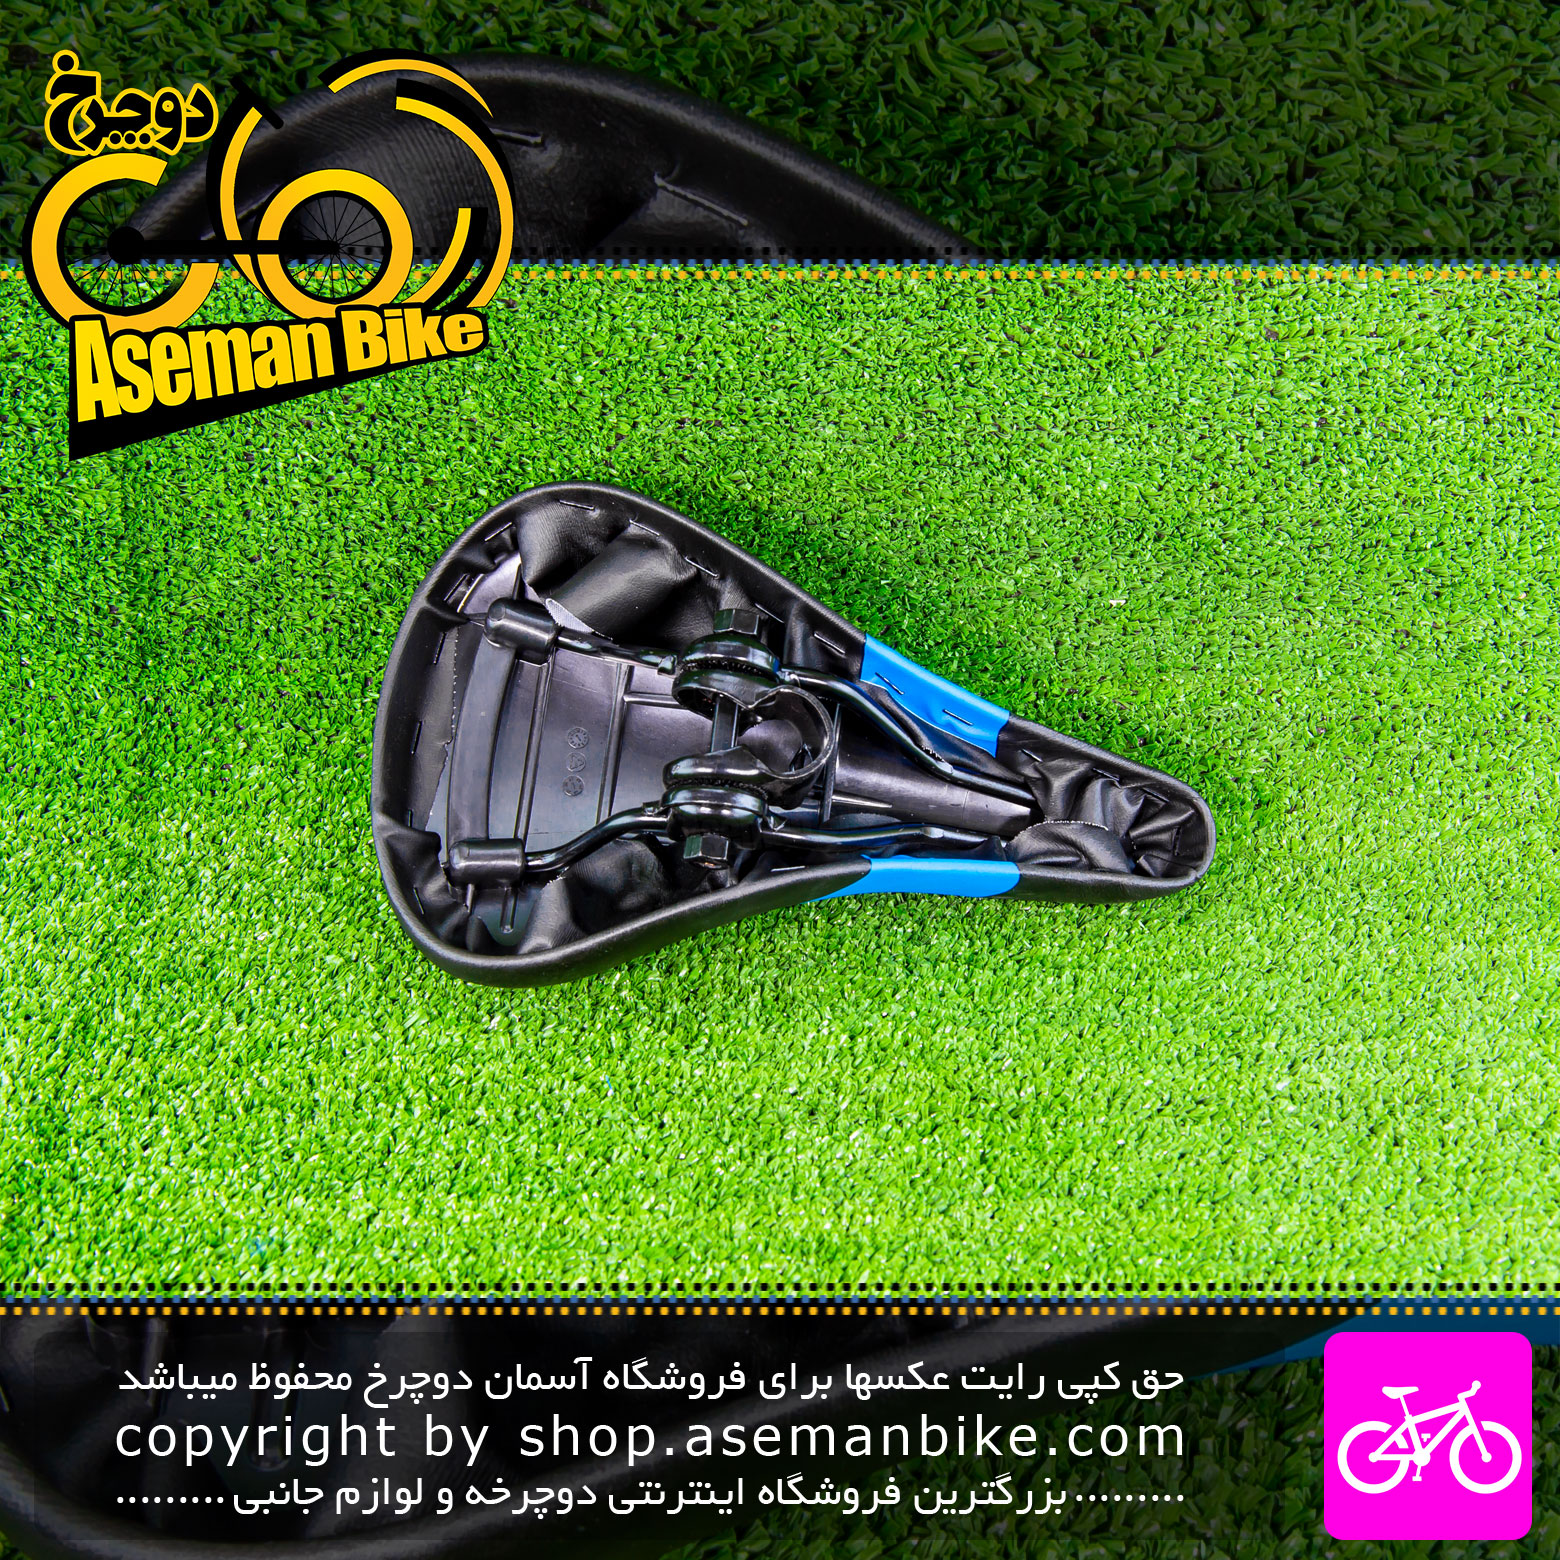 زین دوچرخه بچه گانه ولو پلاس مدل V10 رنگ مشکی آبی Velo Plus Kids Bicycle Saddle V10 Black Blue